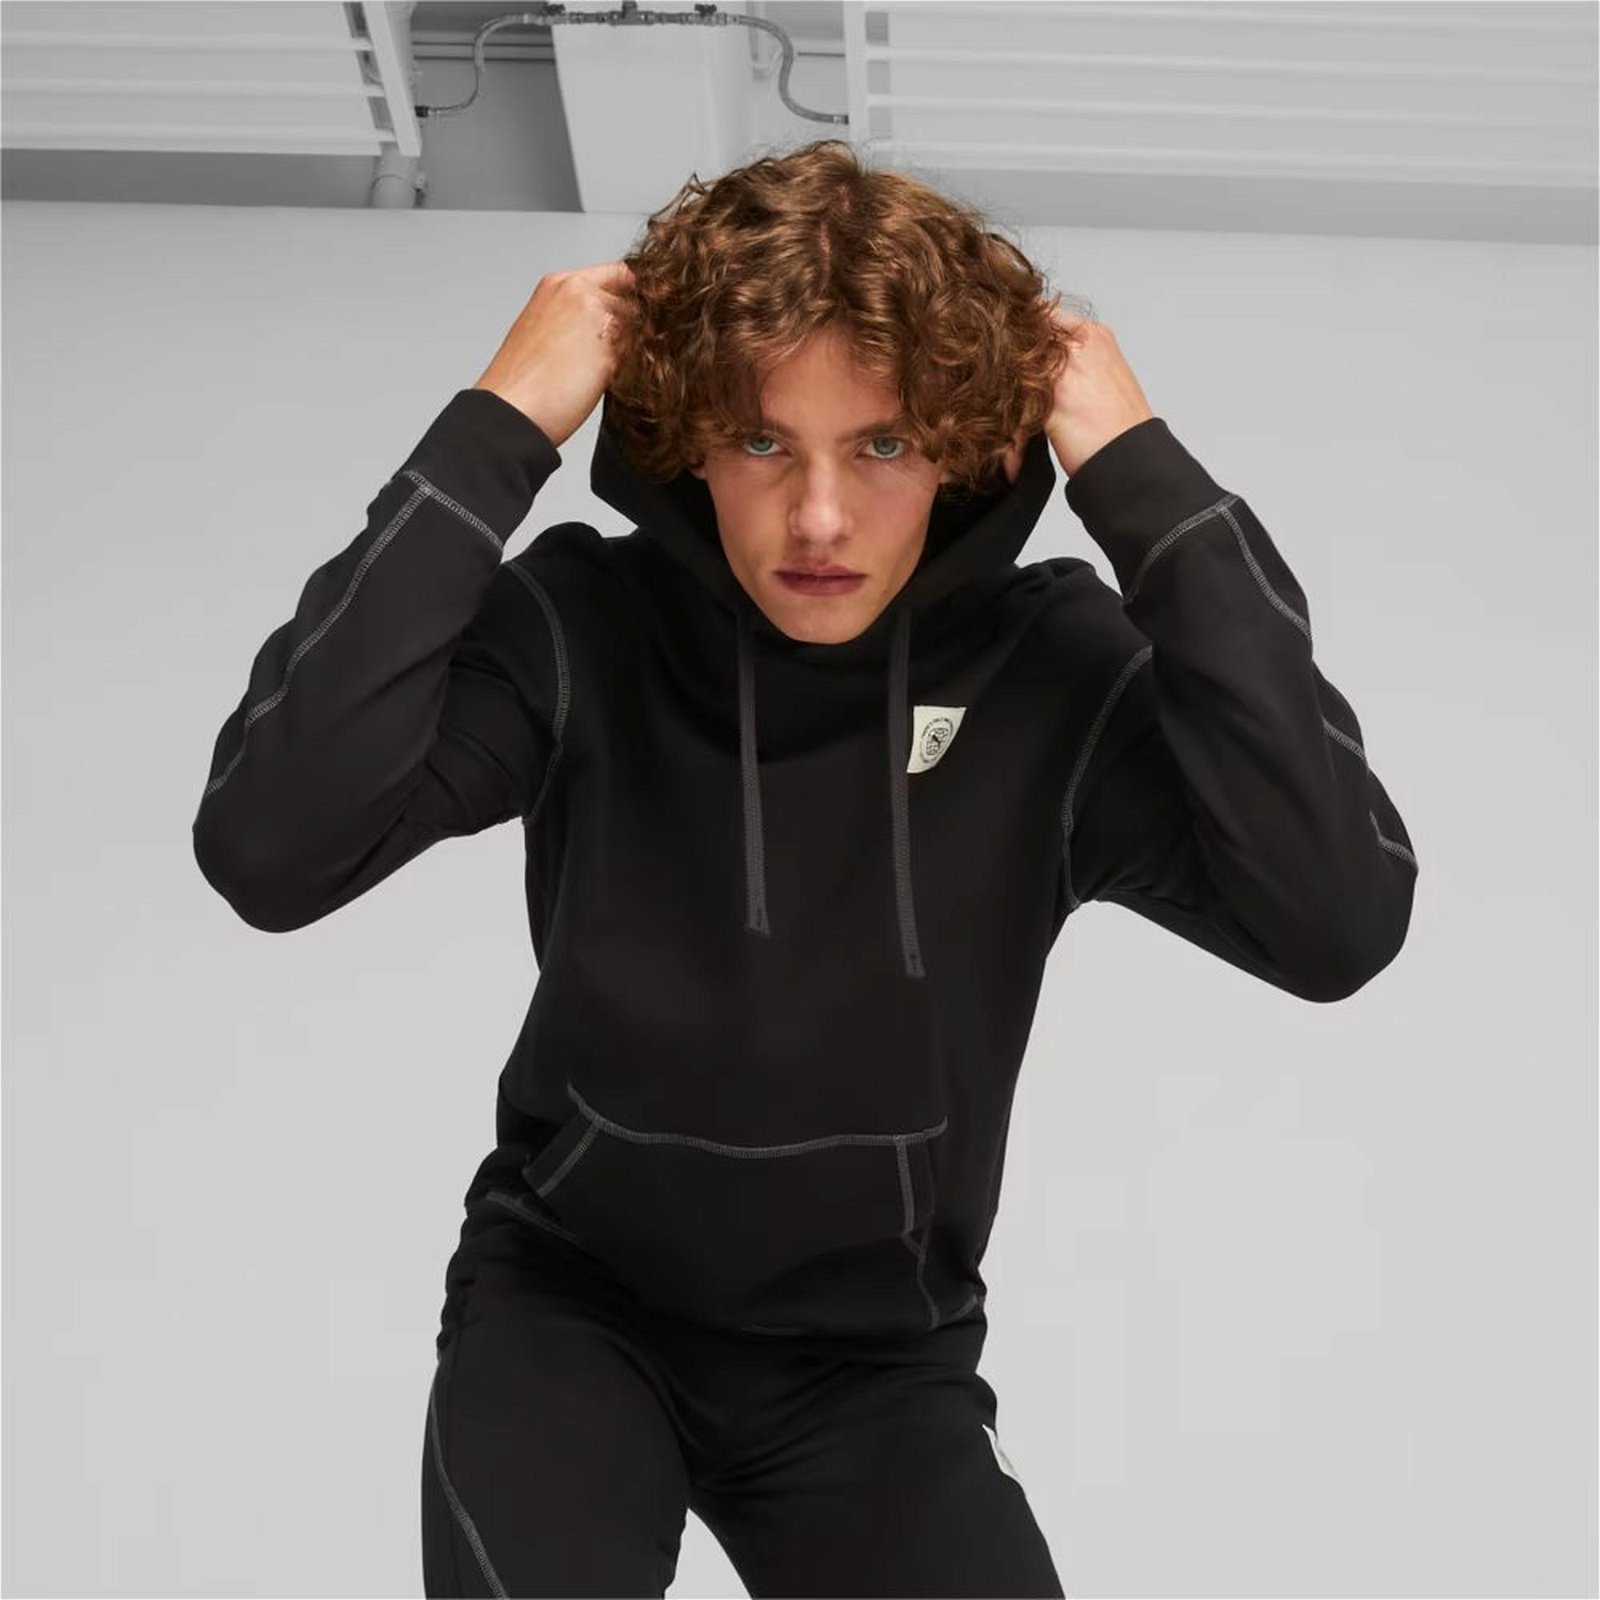 Puma Classics Kadın Siyah Sweatshirt